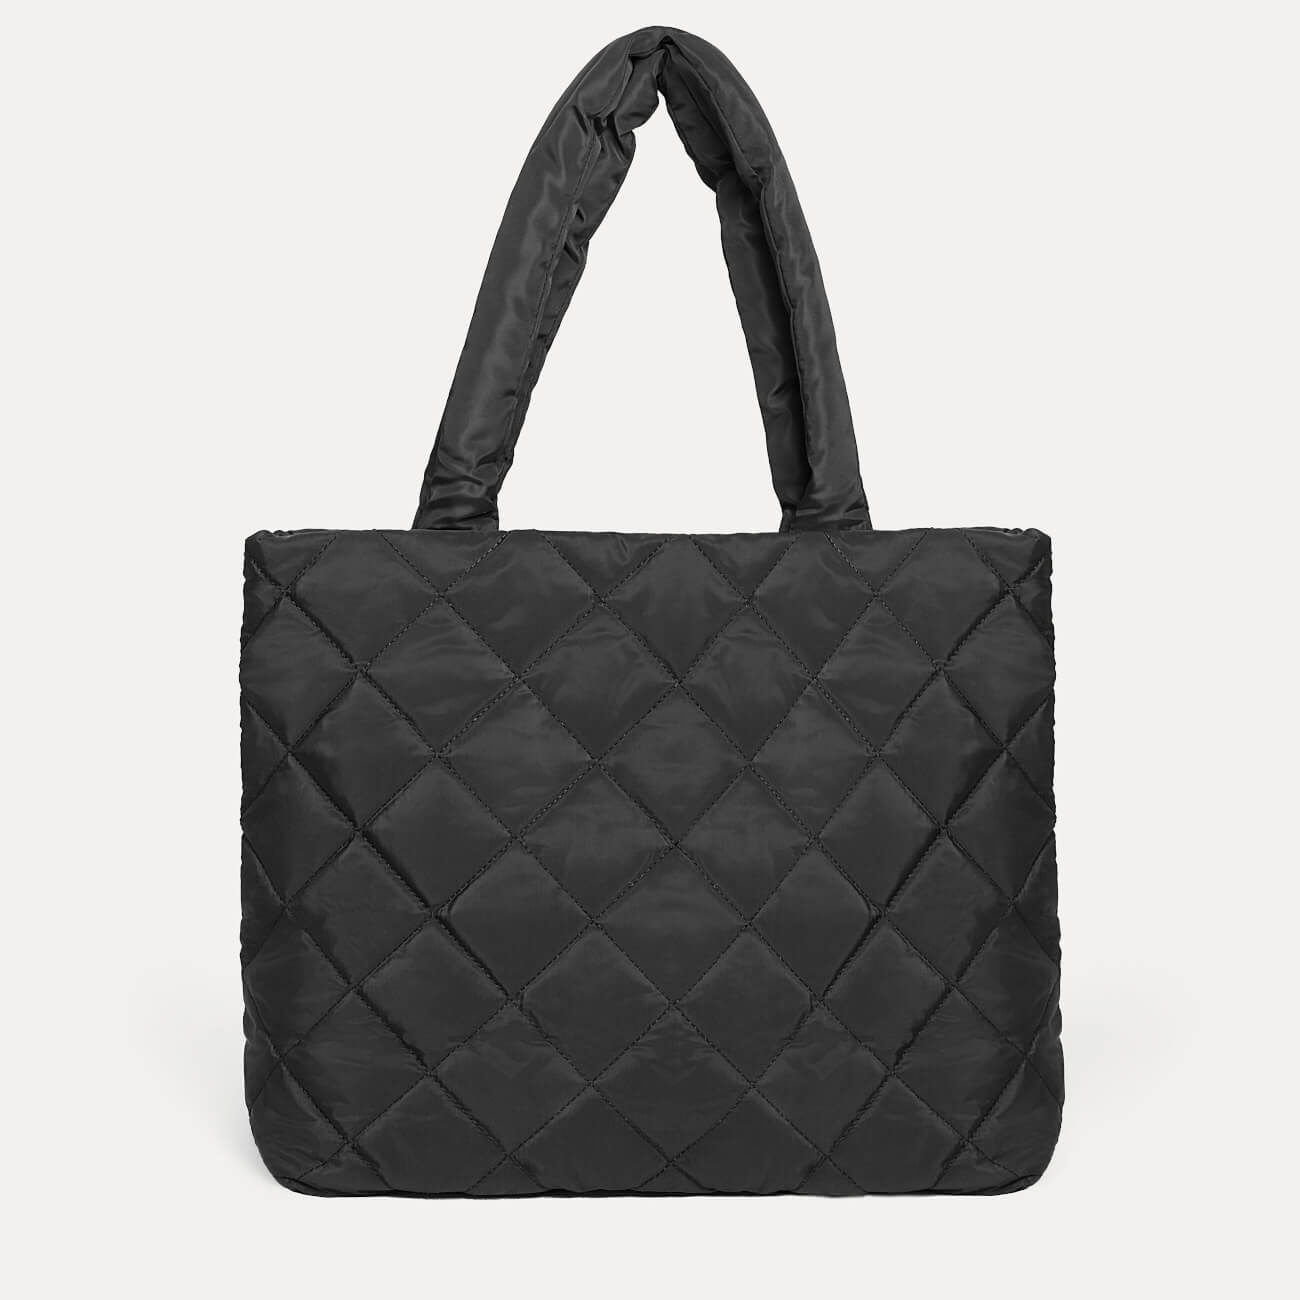 Сумка женская, 45х37 см, стеганая, полиэстер, черная, One stitch сумка lowepro format 100 черная